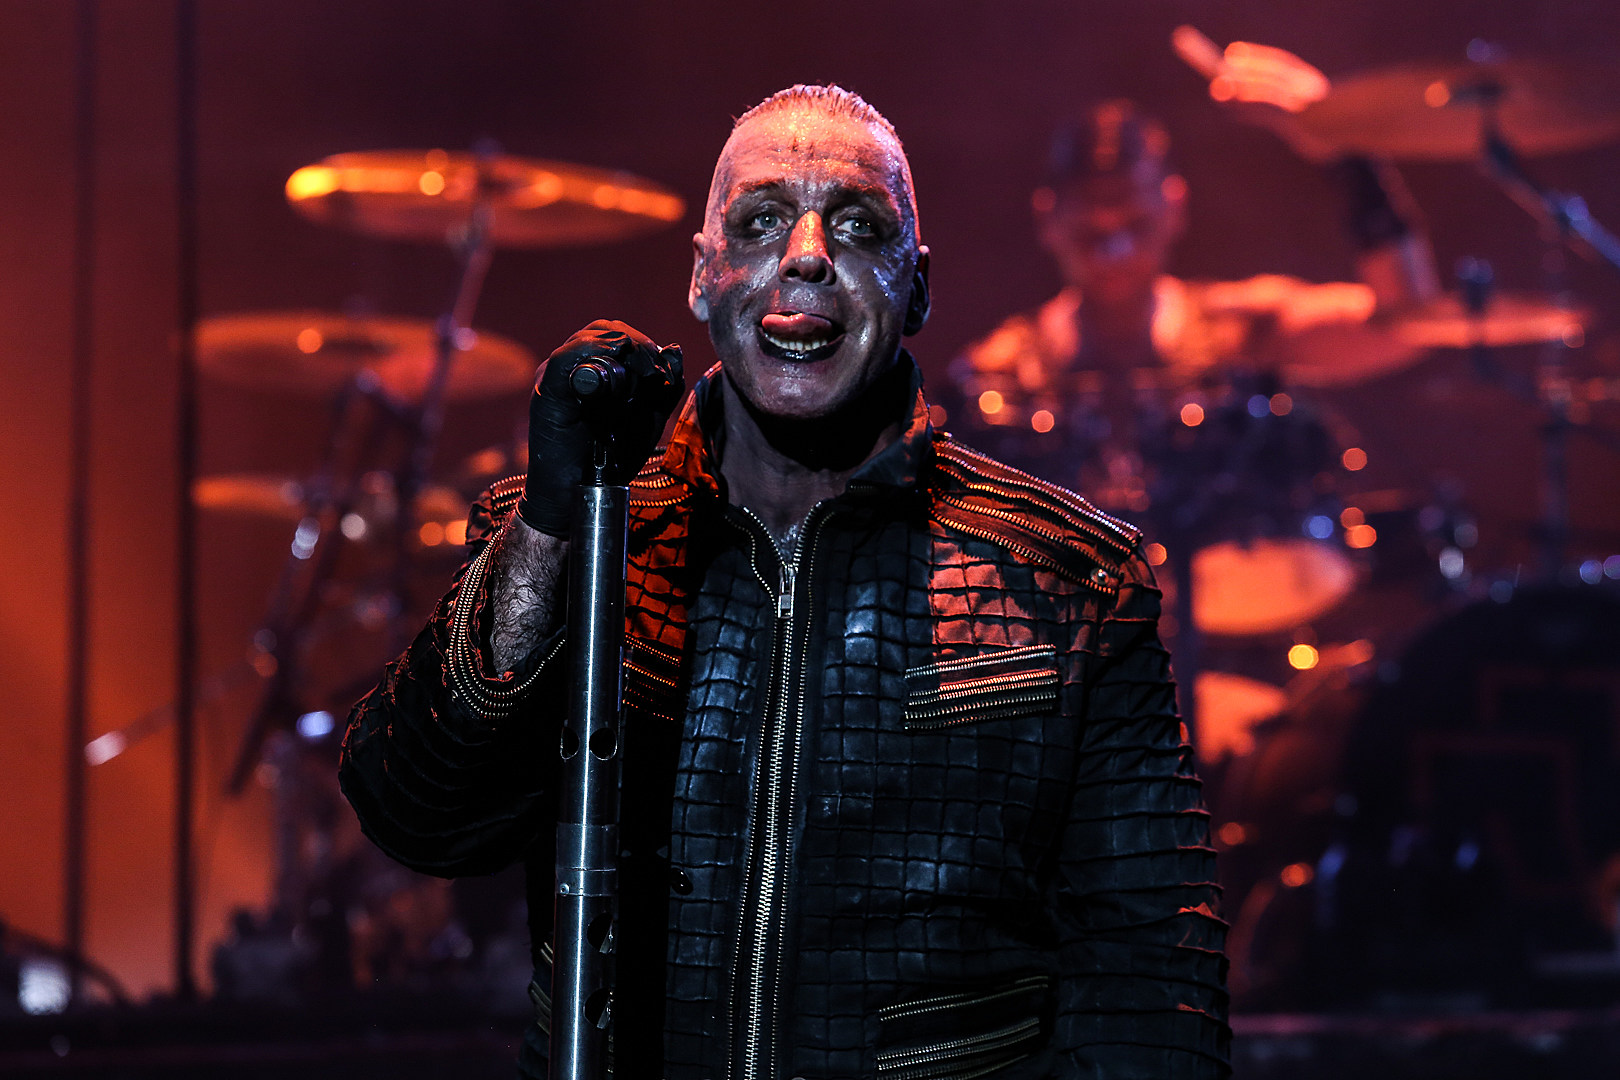 Dos miembros de Rammstein protestaron en un concierto en Rusia - Cúsica Plus